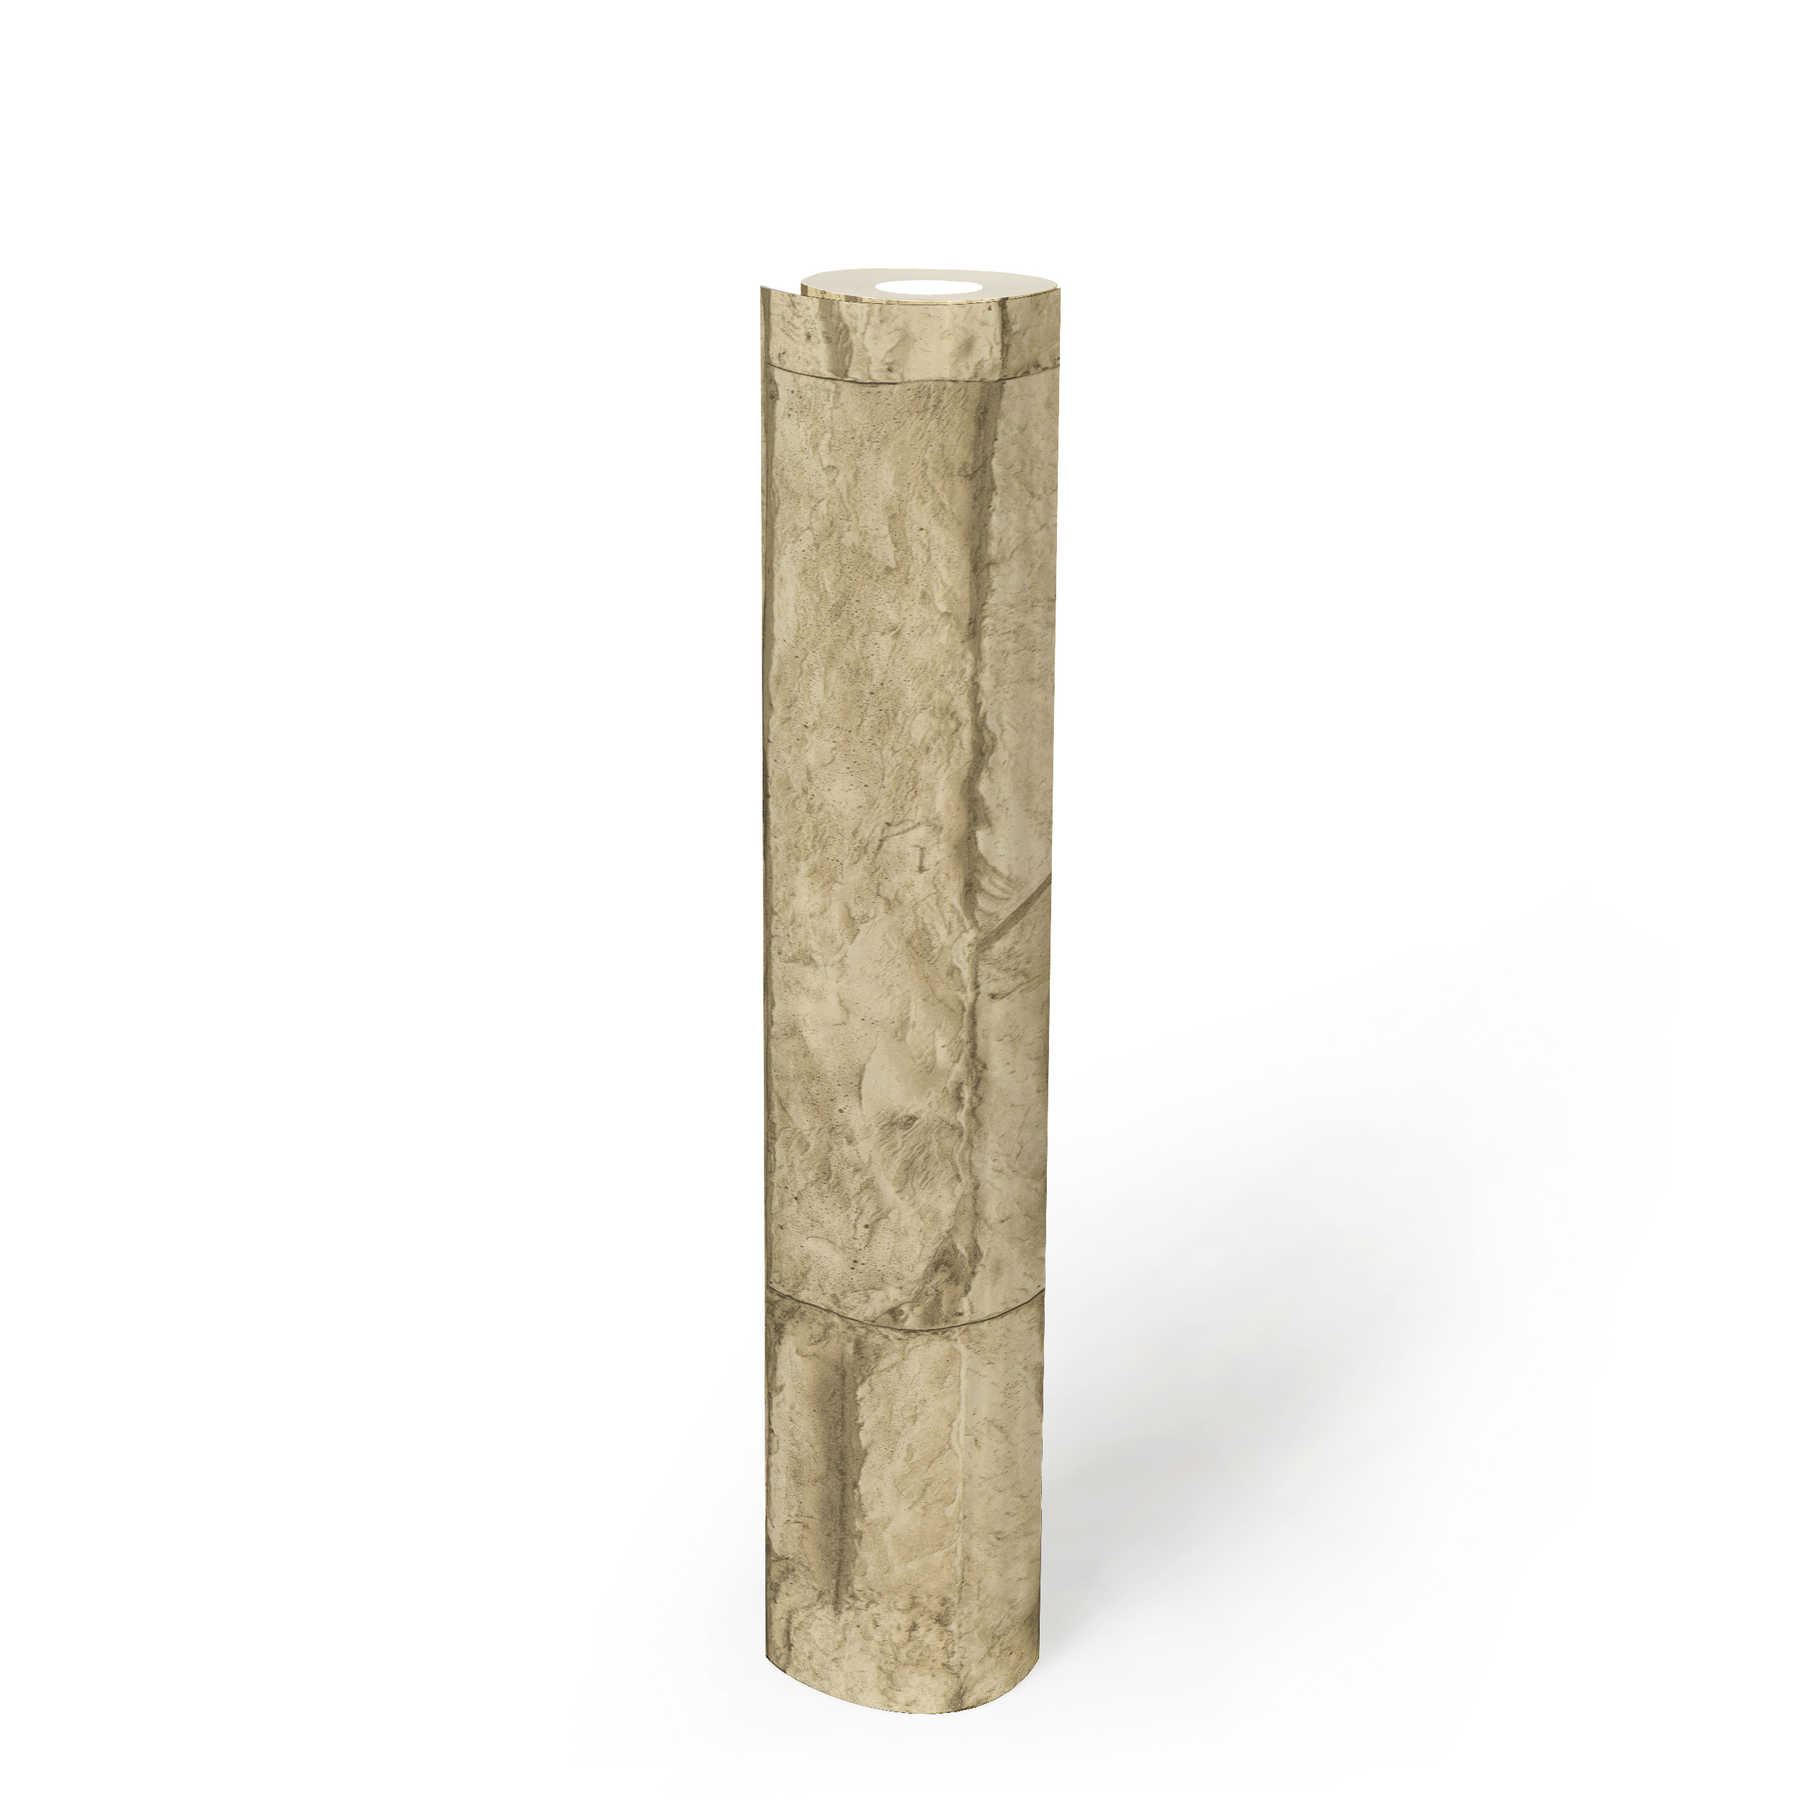             Mauer-Tapete mit Natursteinen rustikal & realistisch – Beige, Creme
        